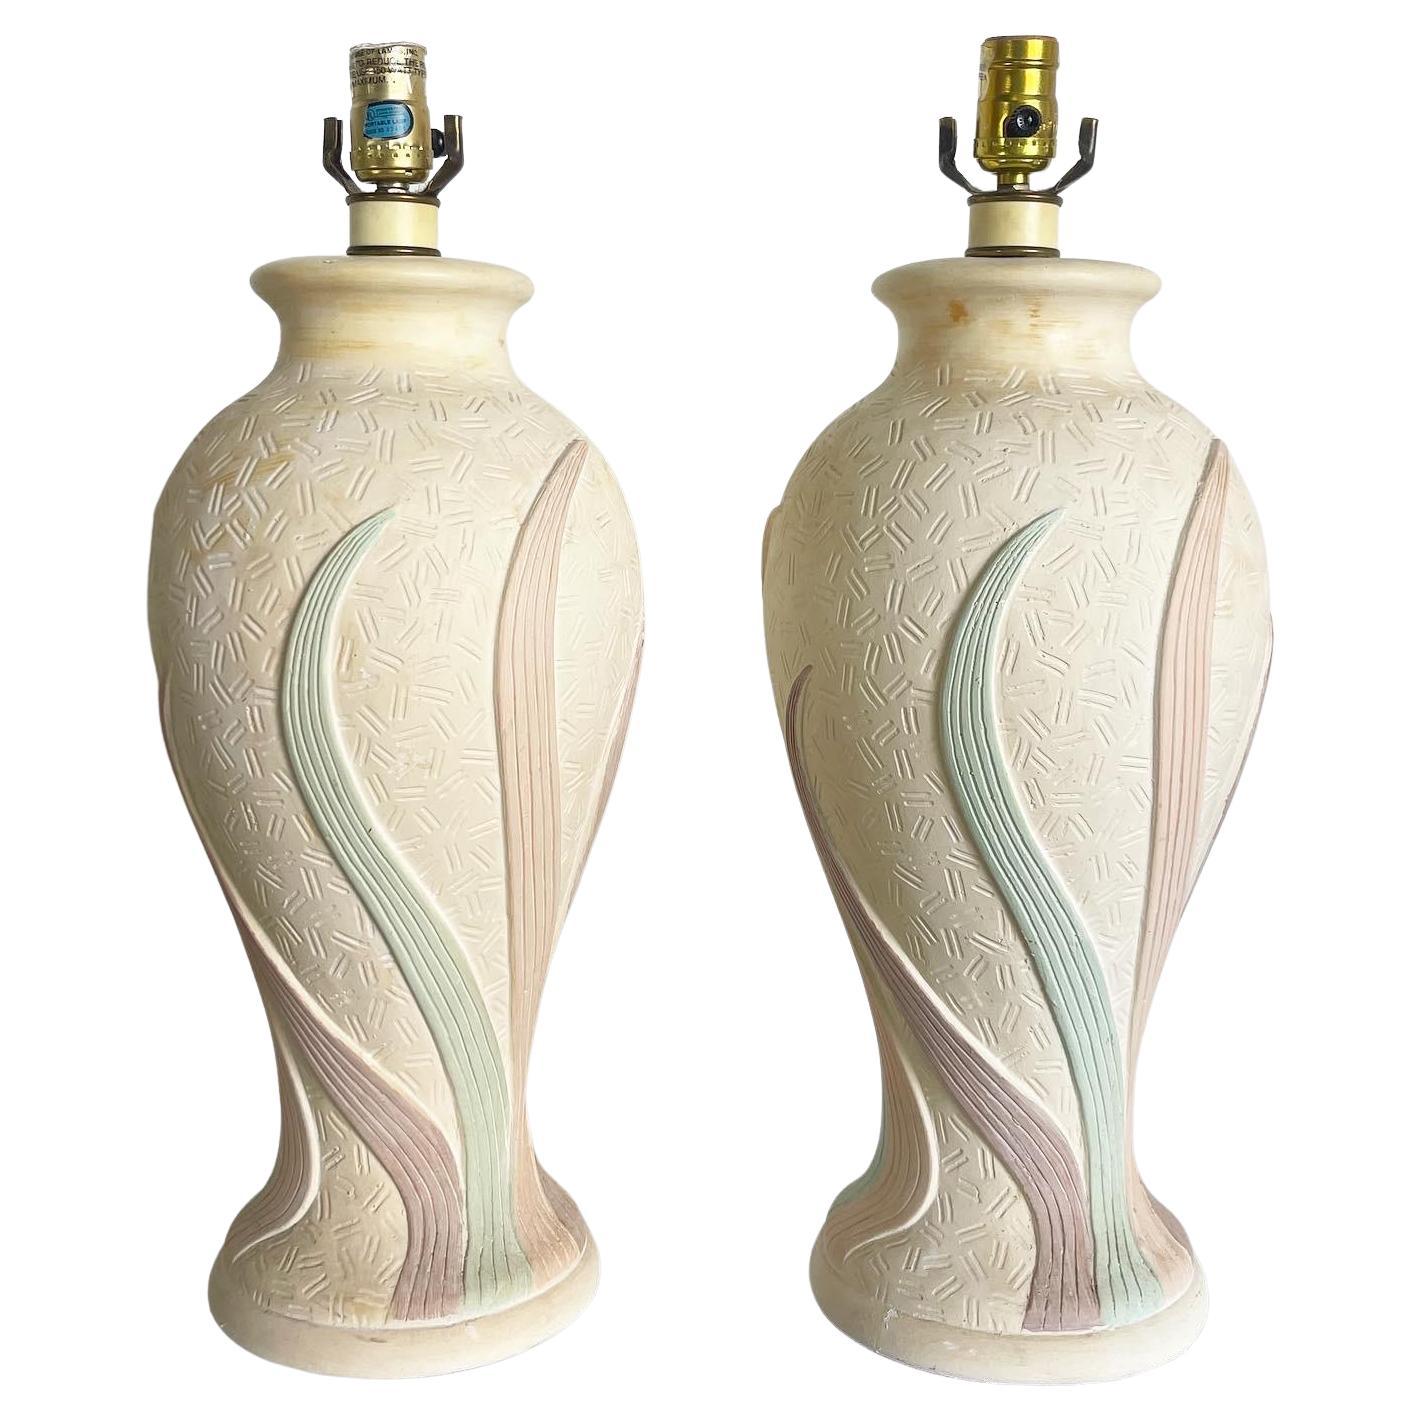 Zweistöckige postmoderne Tischlampen aus Keramik in Rosa, Grün und Lila mit Wirbeln - ein Paar